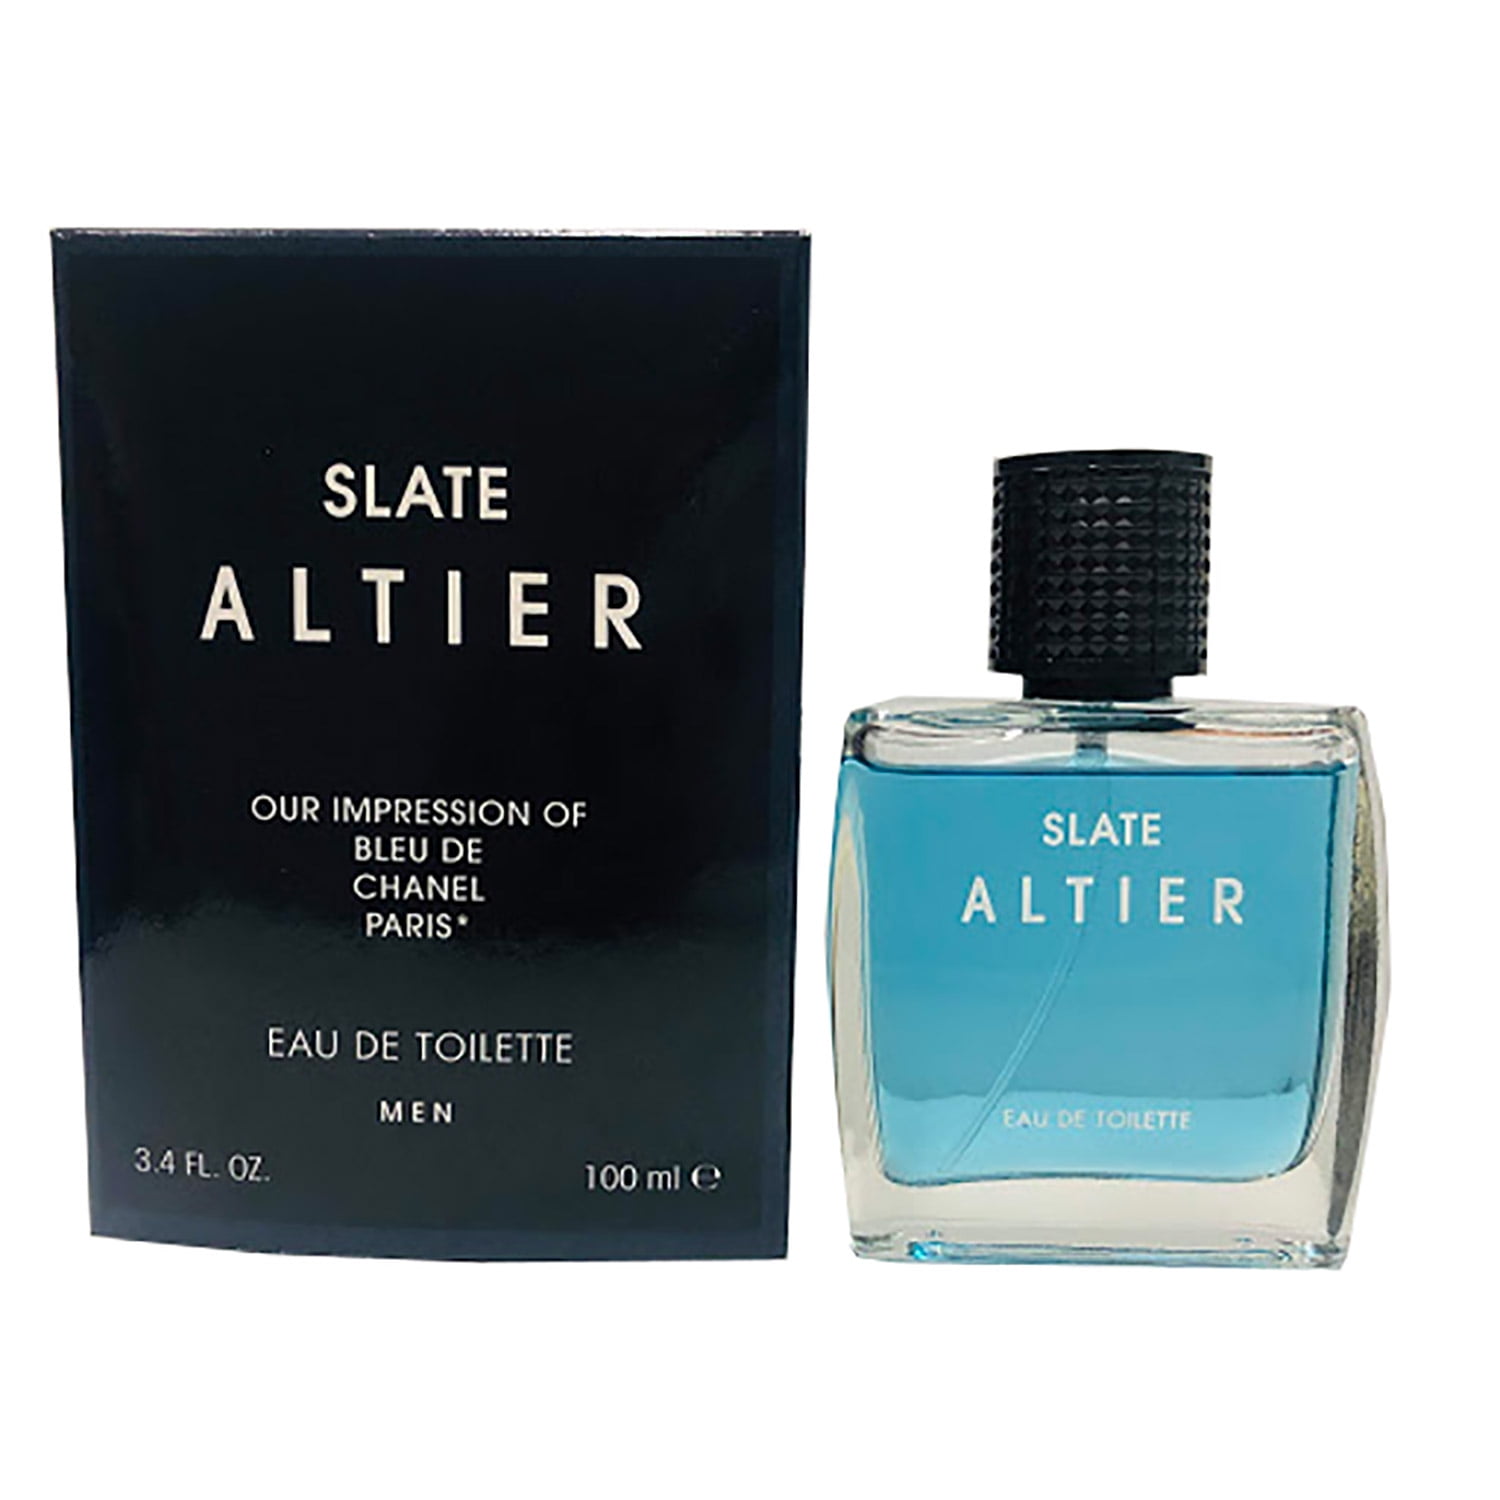 Slate Altier For Men, Impression of Bleu De Chanel Paris, 3.4